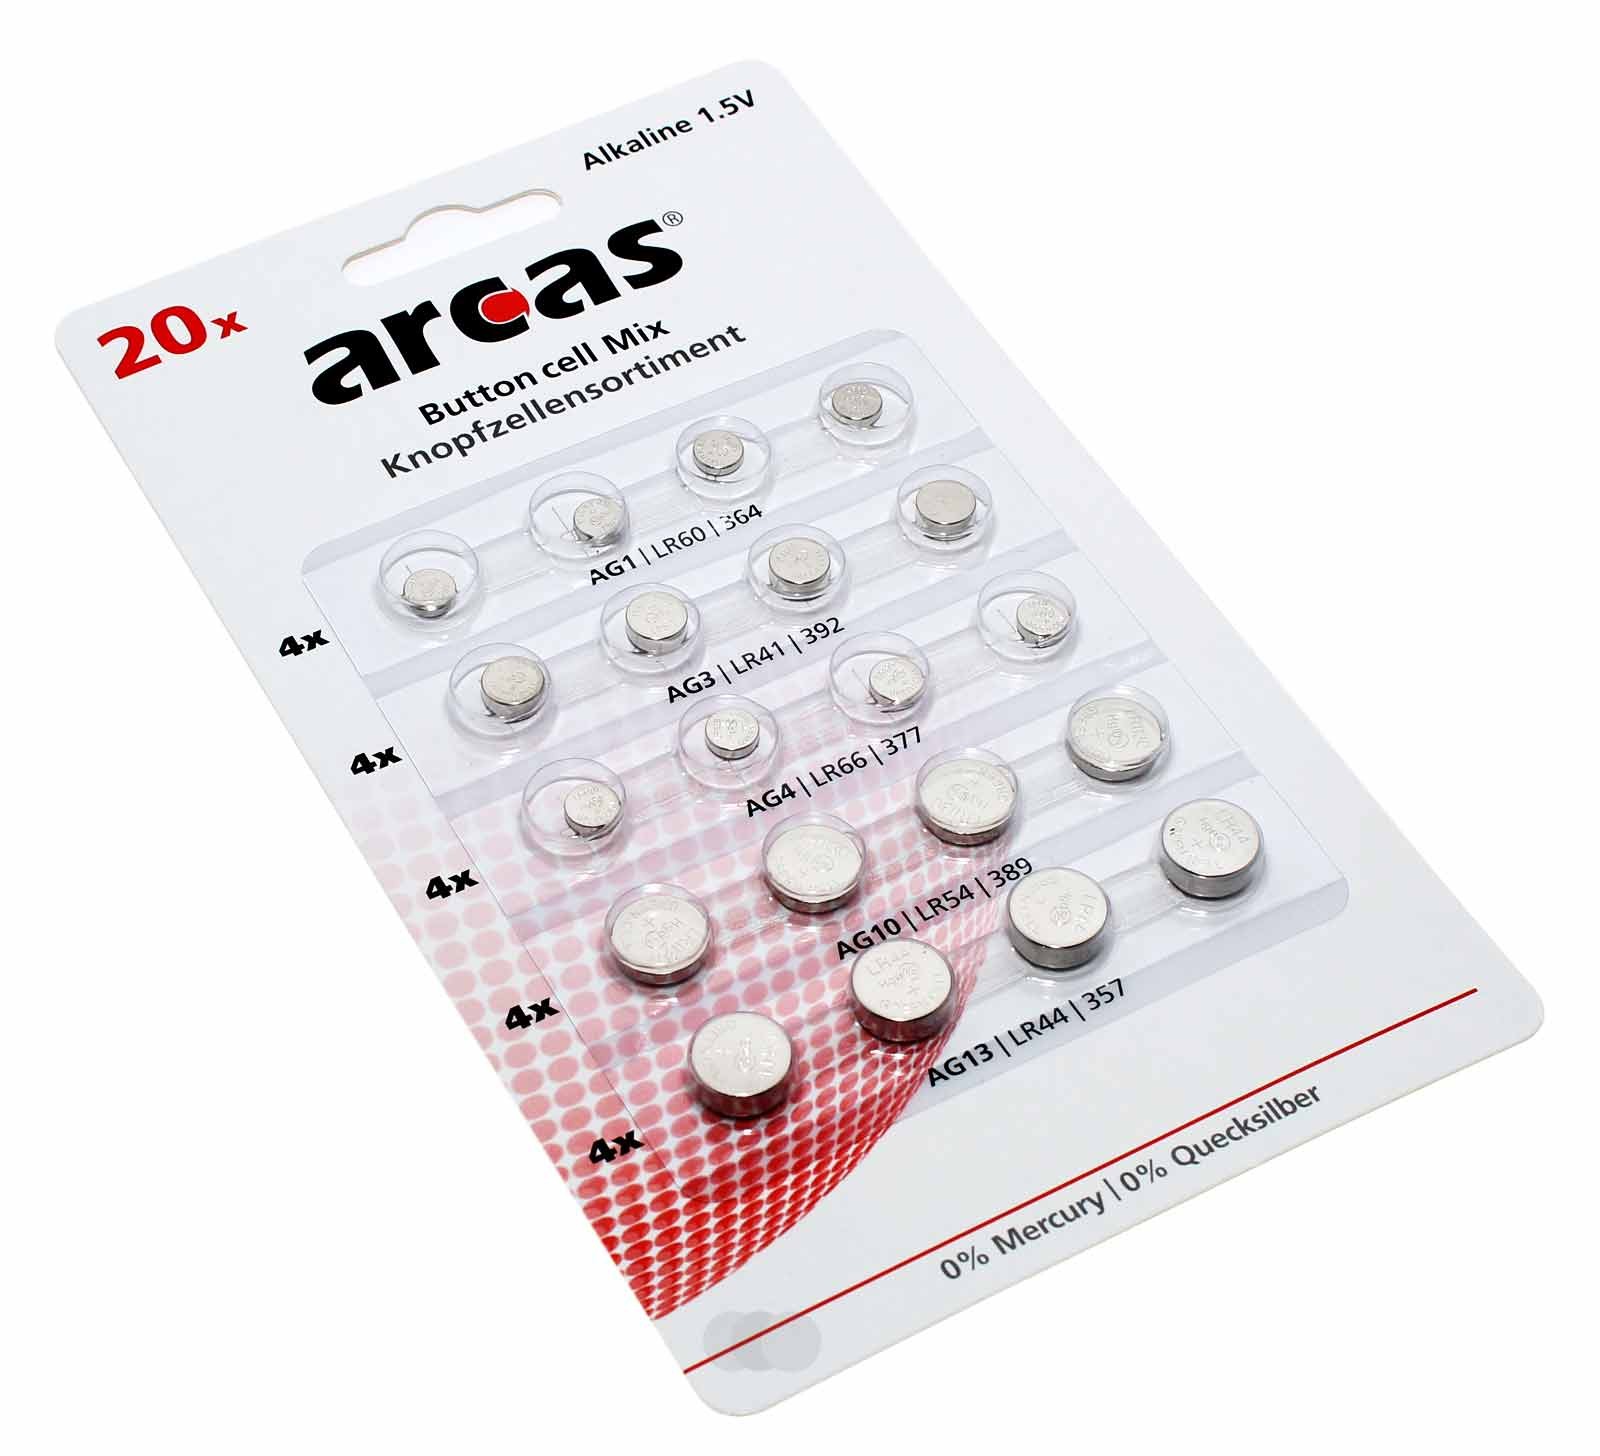 20 Stk. Arcas Knopfzellen-Set Alkaline je 4x AG1, AG3, AG4, AG10, AG13